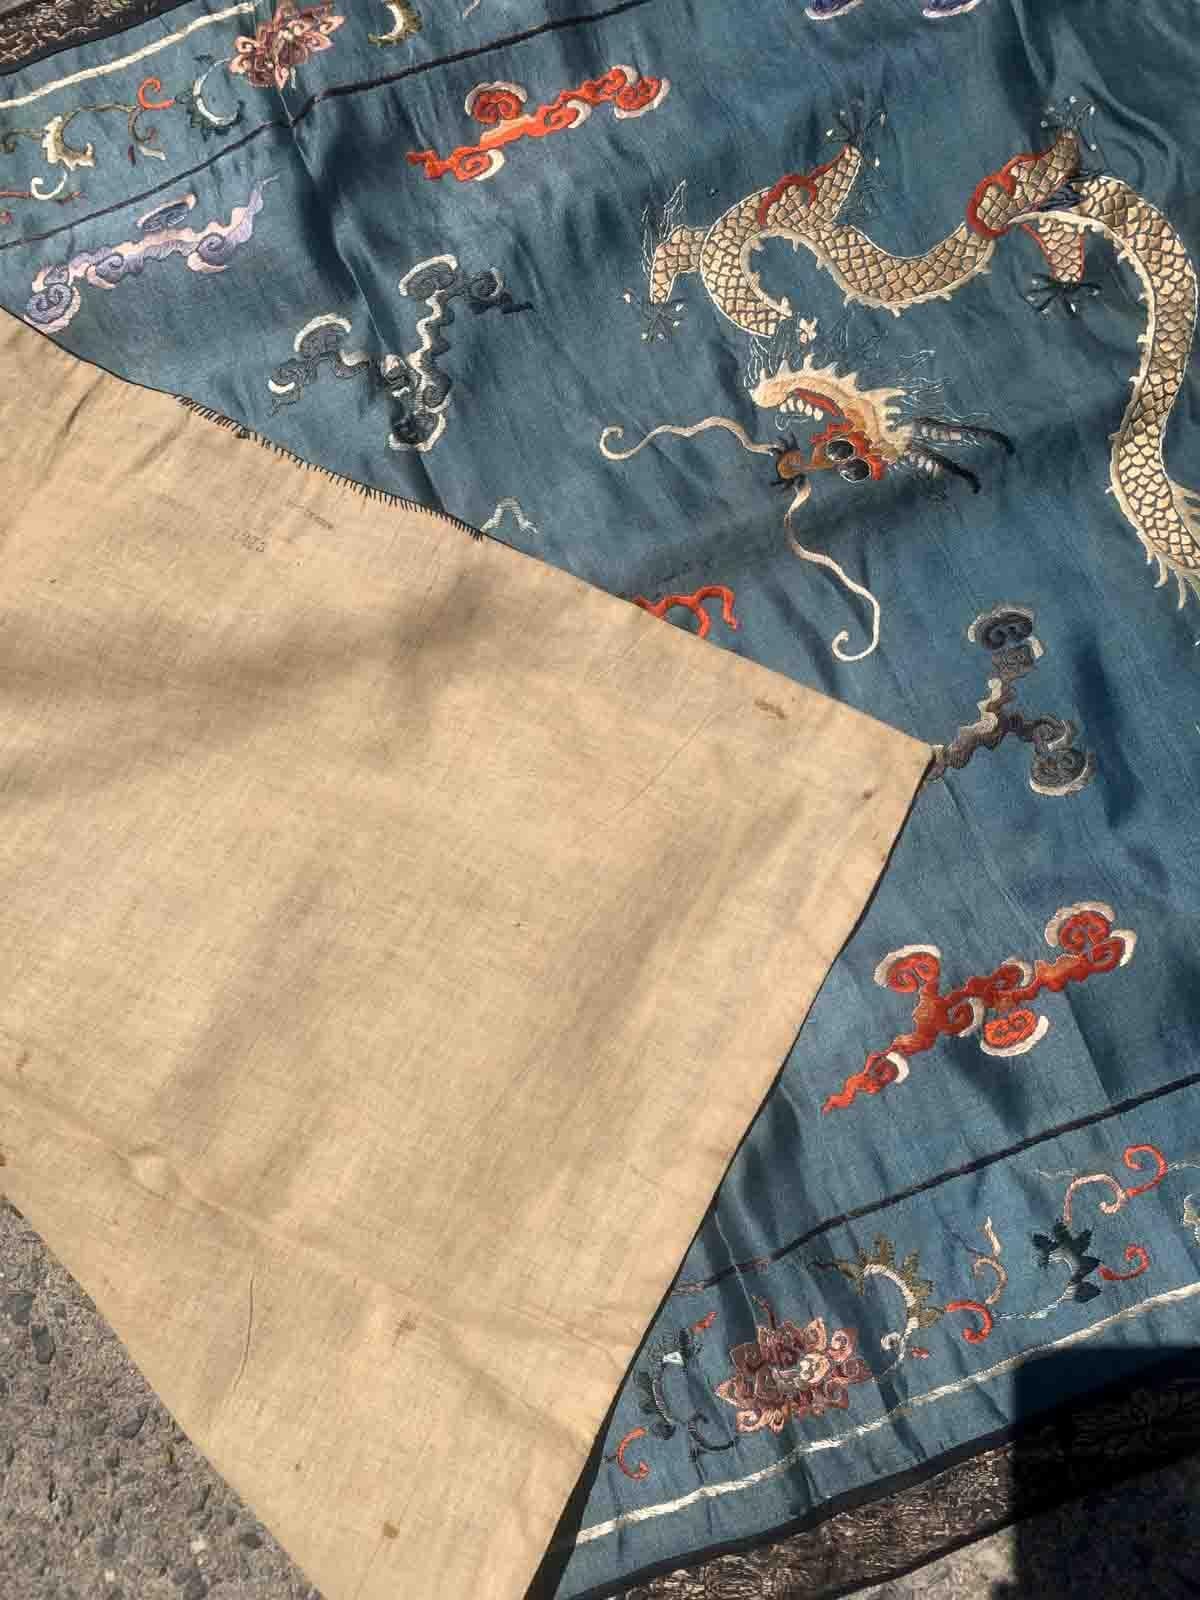 Textile ancien en soie, fait à la main, représentant un dragon chinois. Cette tapisserie est de la fin du 19ème siècle en état original, elle a quelques décolorations dues à l'âge.

-état : original, quelques décolorations dues à l'âge,

-vers